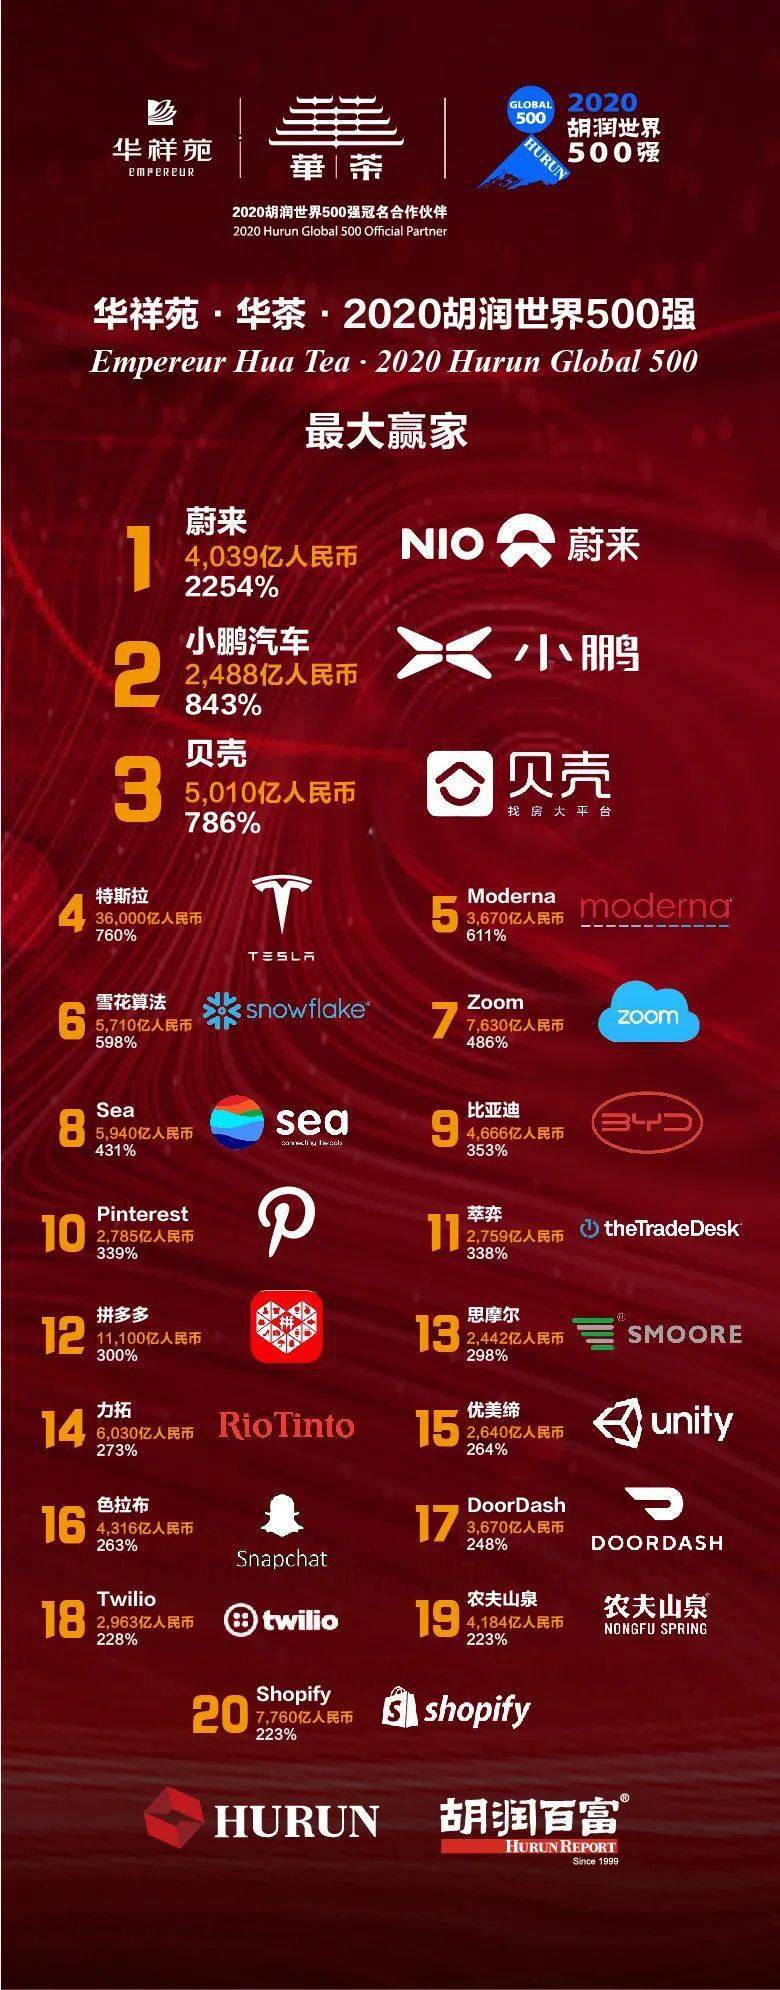 《华祥苑·华茶·2020胡润世界500强》发布!中国51家企业上榜